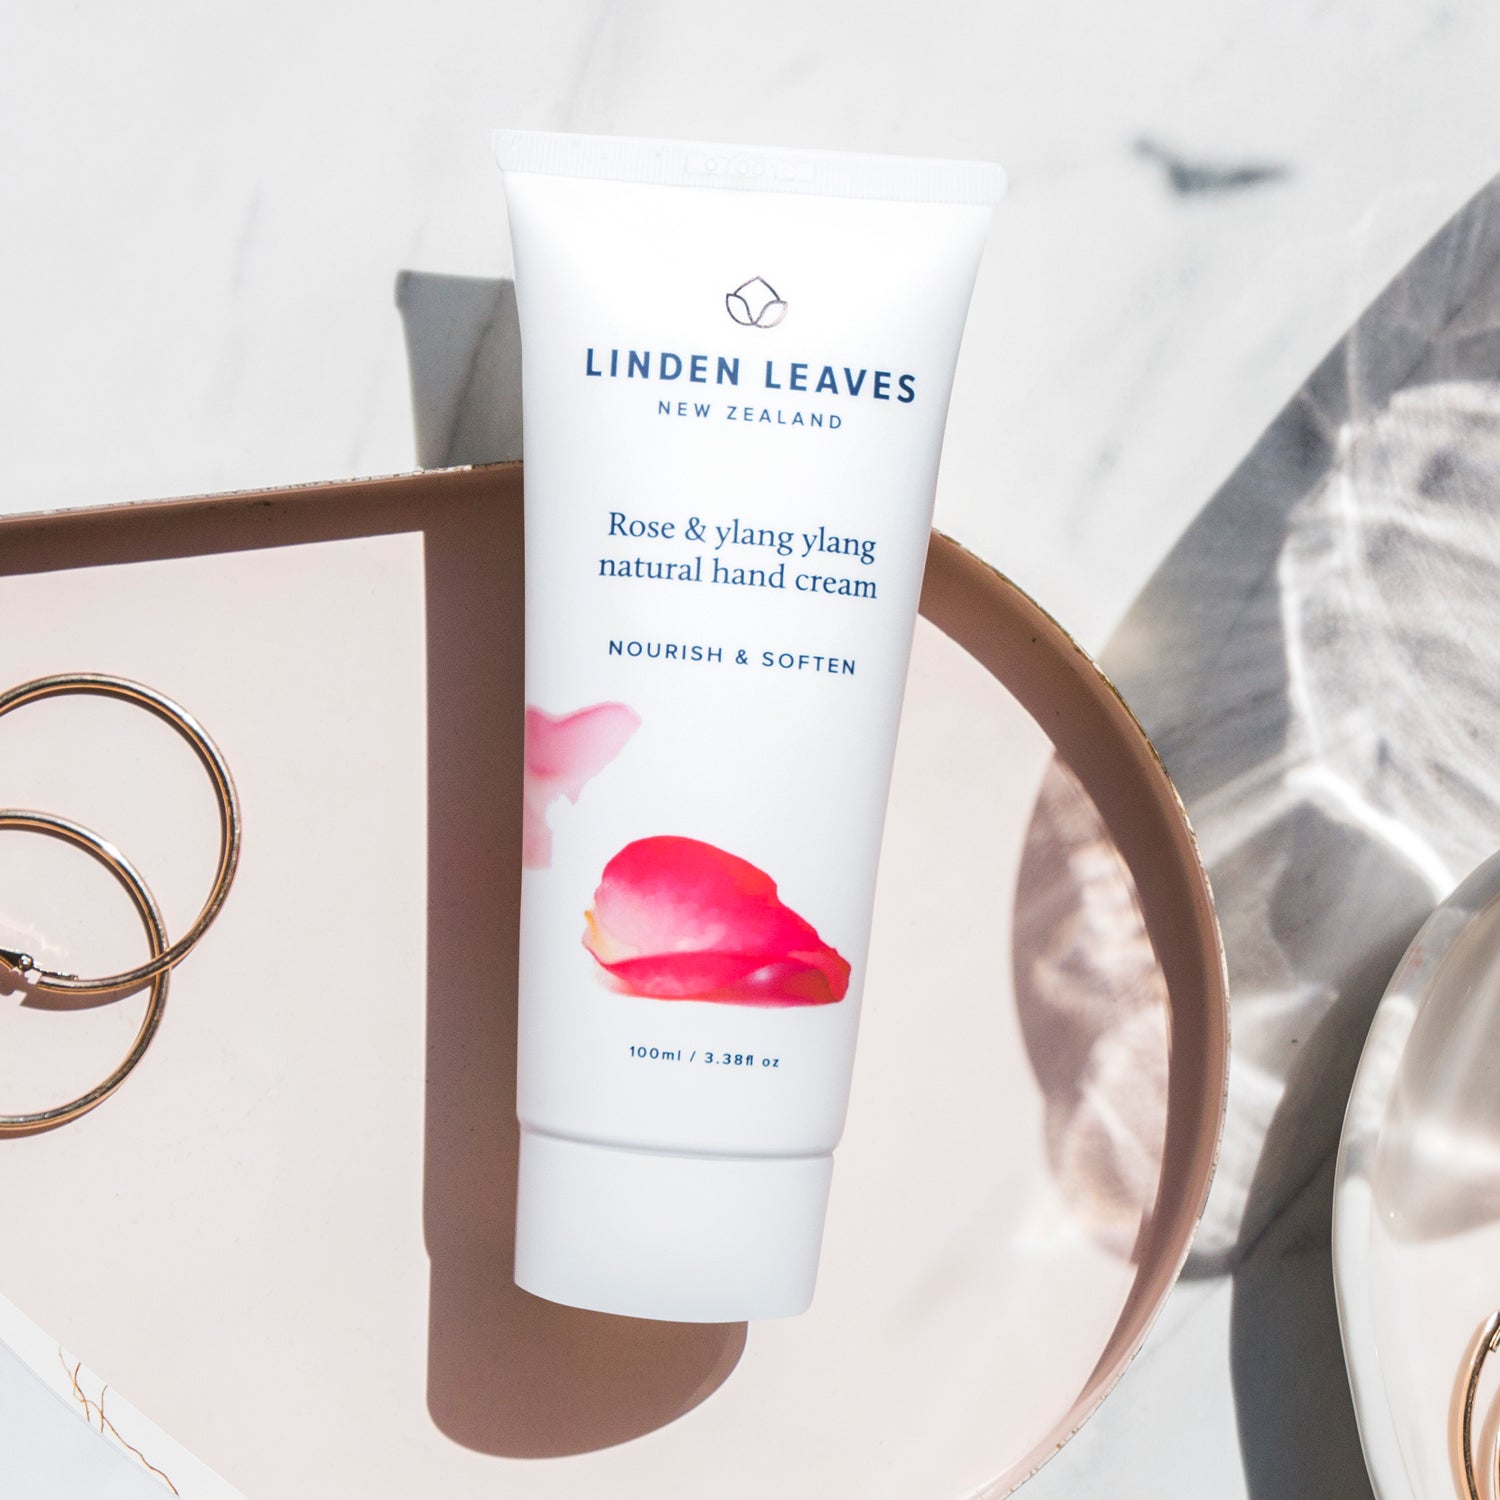 Linden Leaves Rose & Ylang Ylang Natural Hand Cream 100ml.